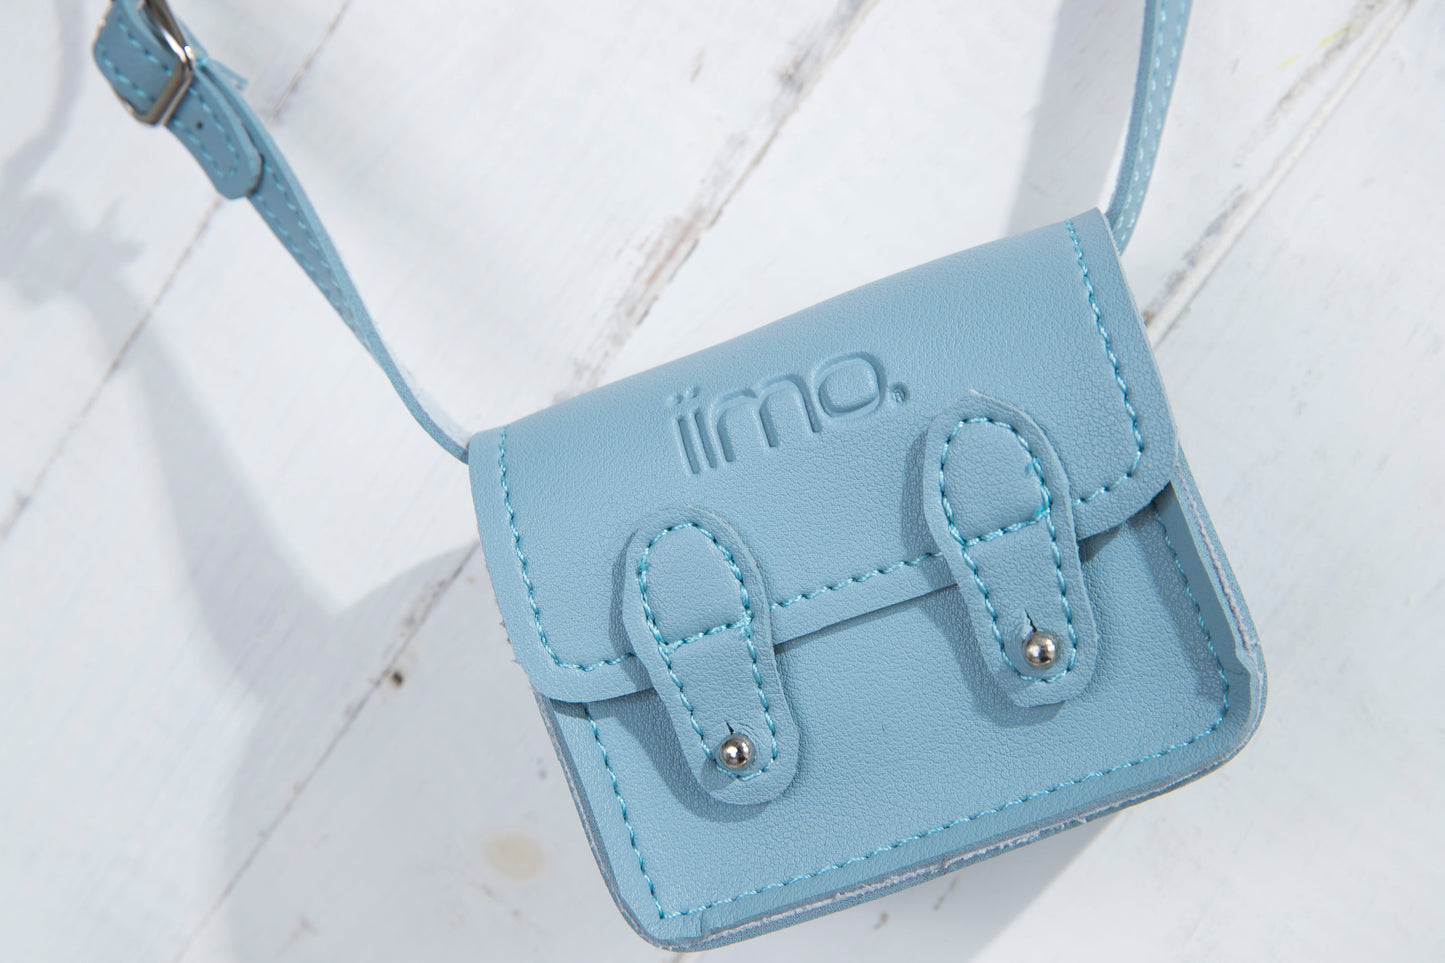 Limo Limited Edition Bag